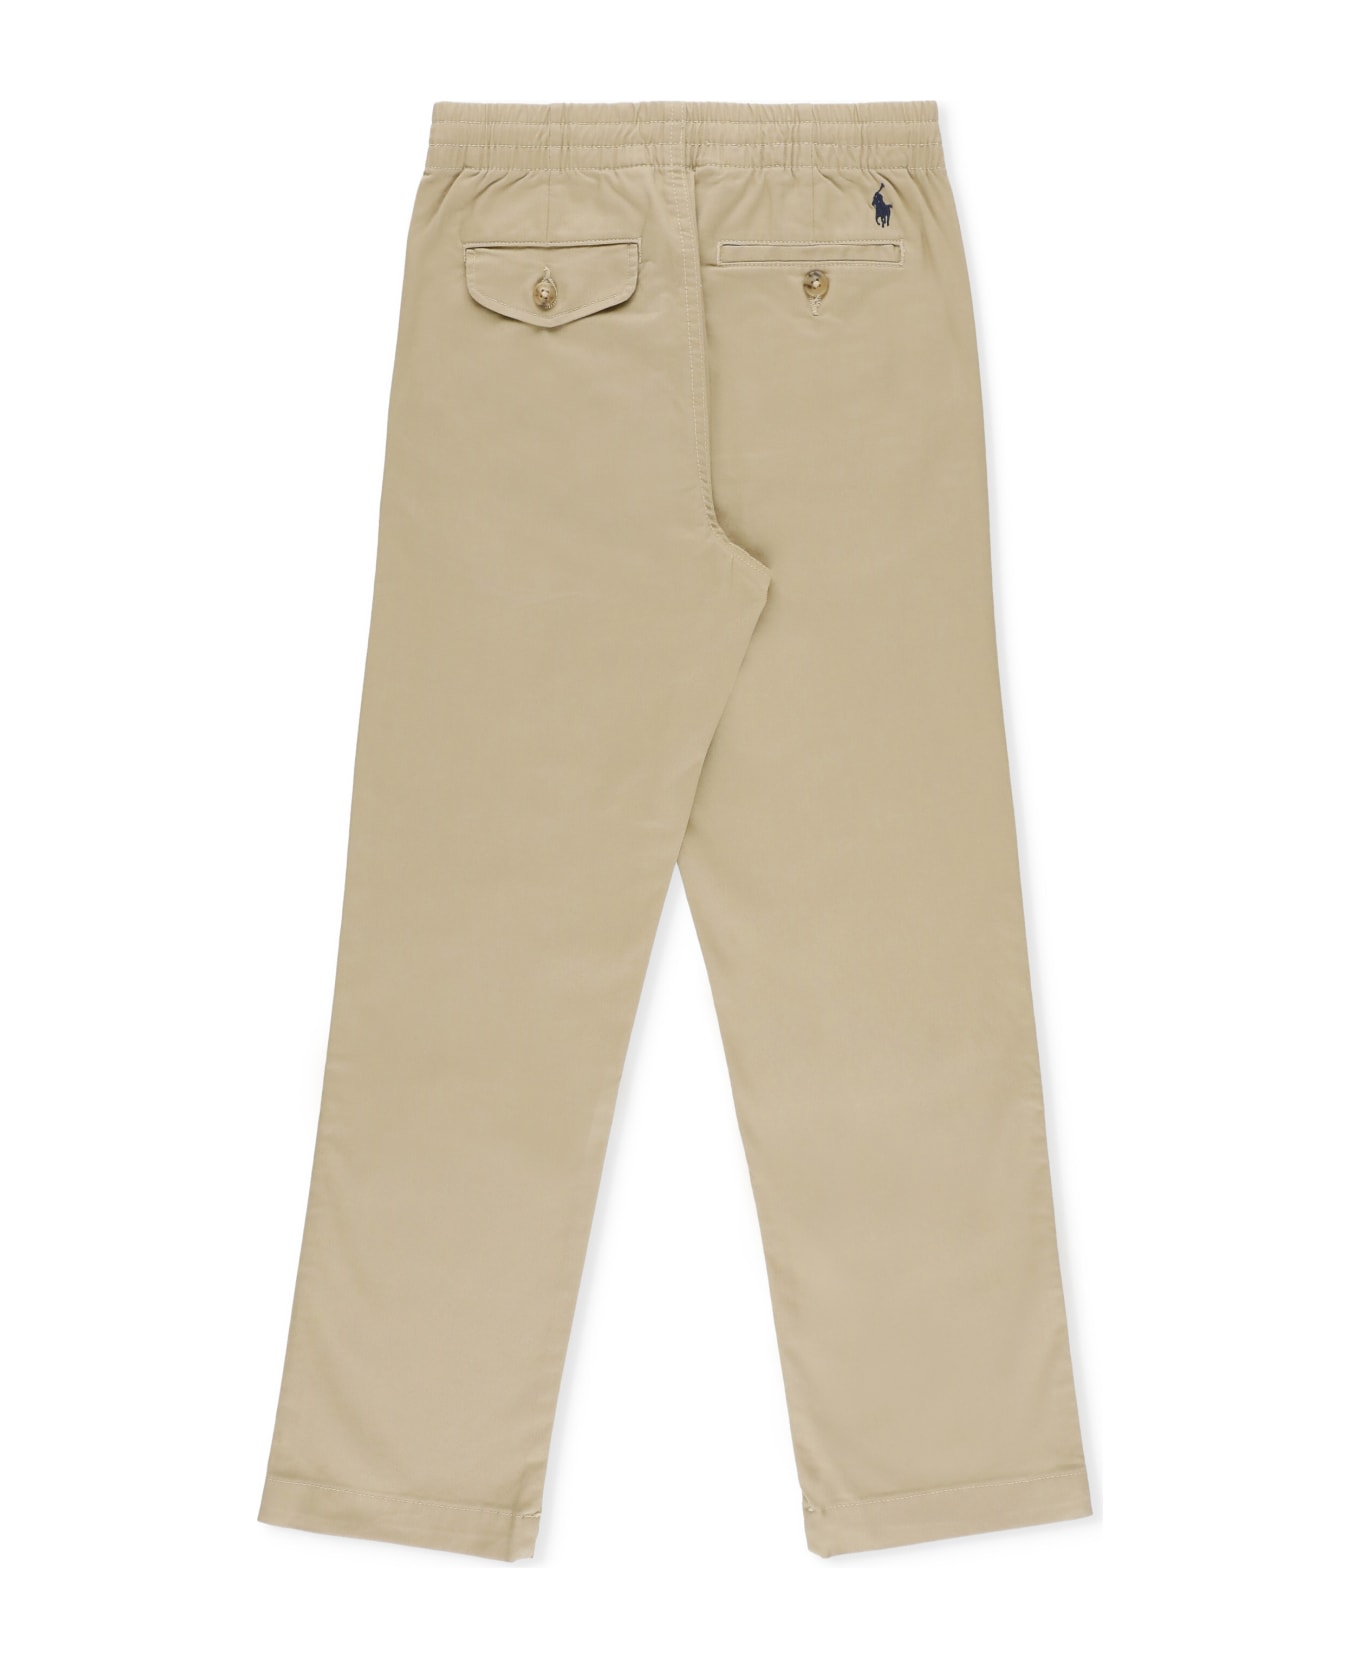 Ralph Lauren Pants With Logo - Beige ボトムス